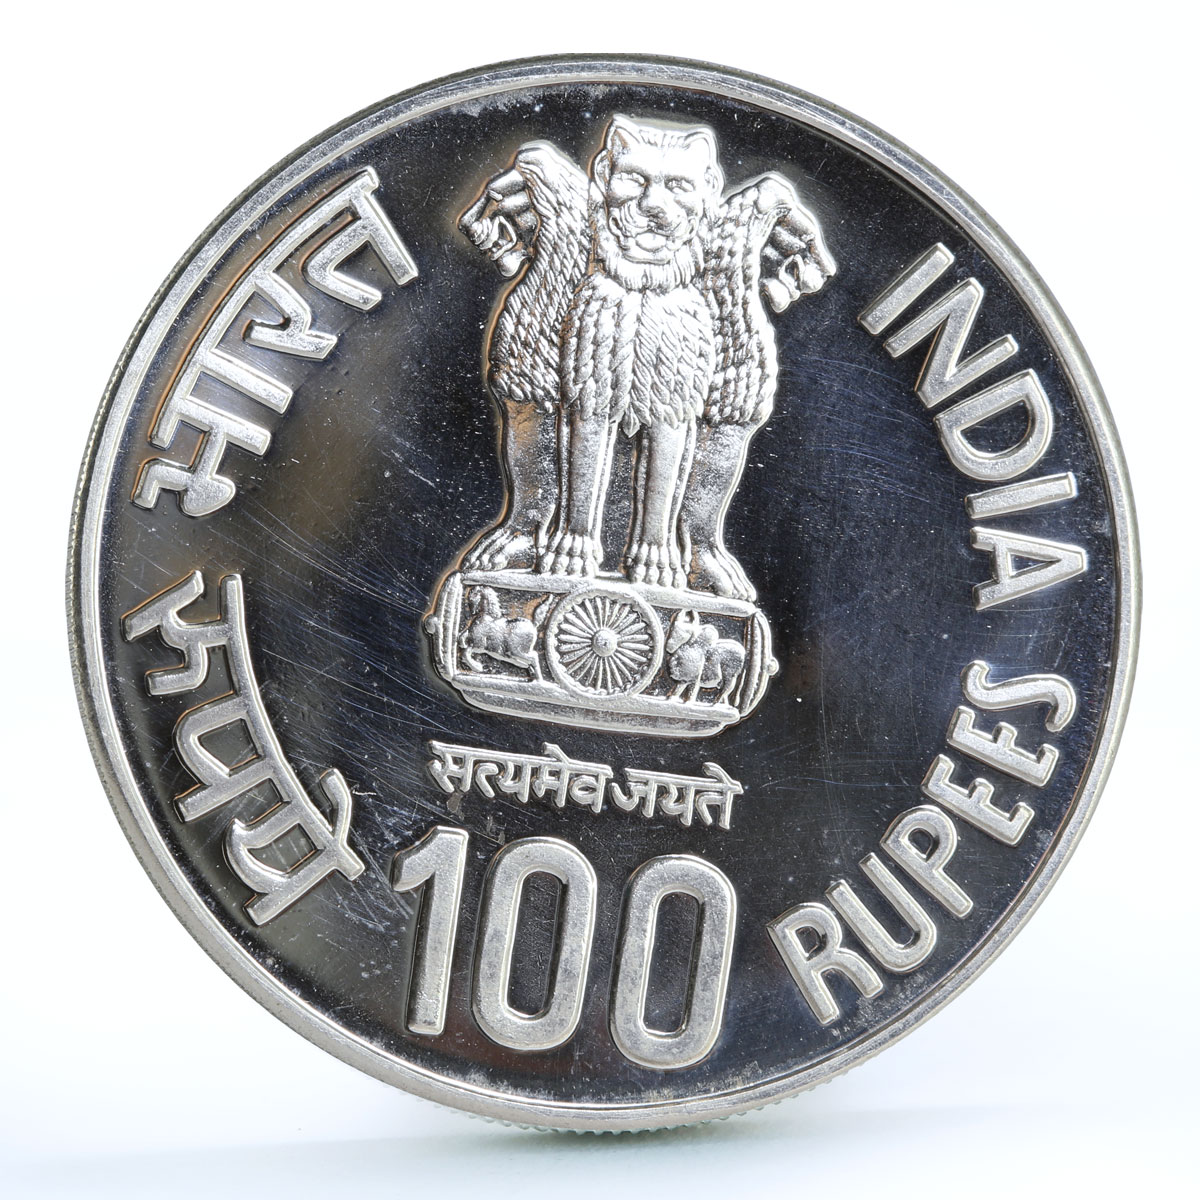 India 100 rupees Philosopher Mahatma Basaveshwara silver coin 2006